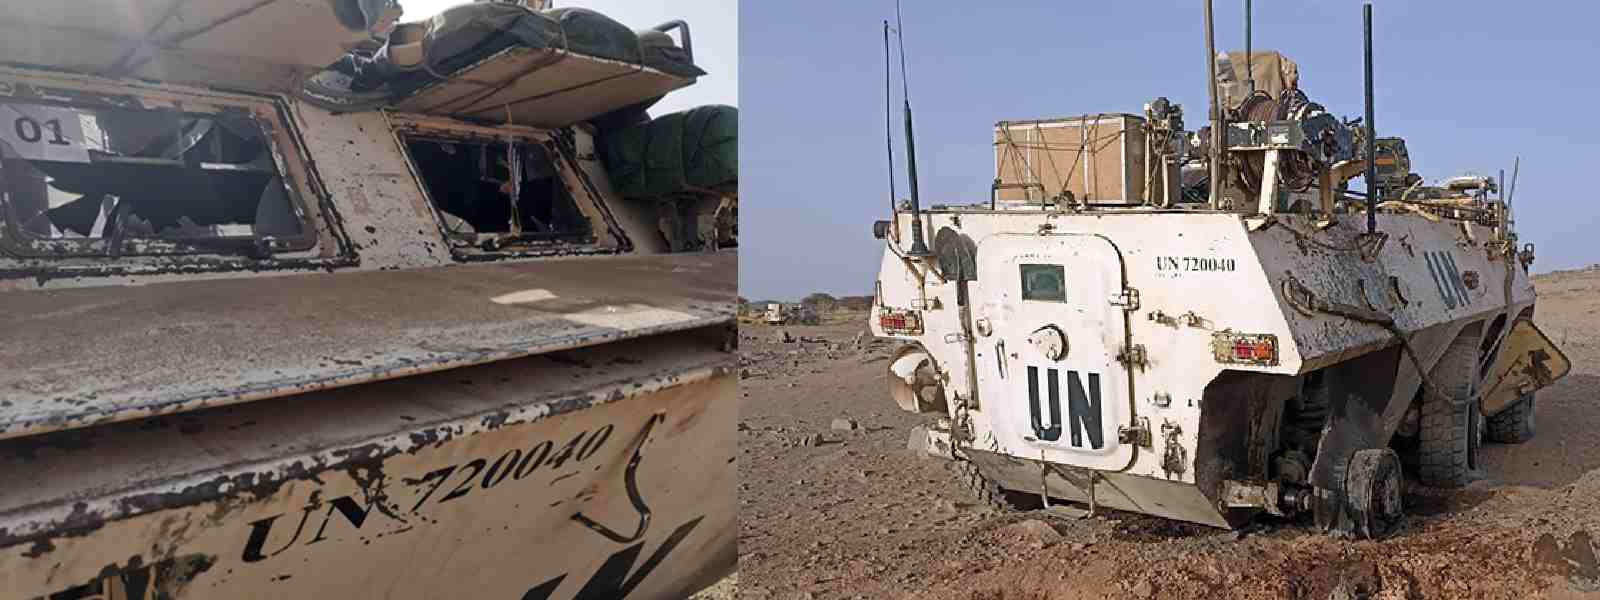 Four Sri Lankan Peacekeepers injured in Mali